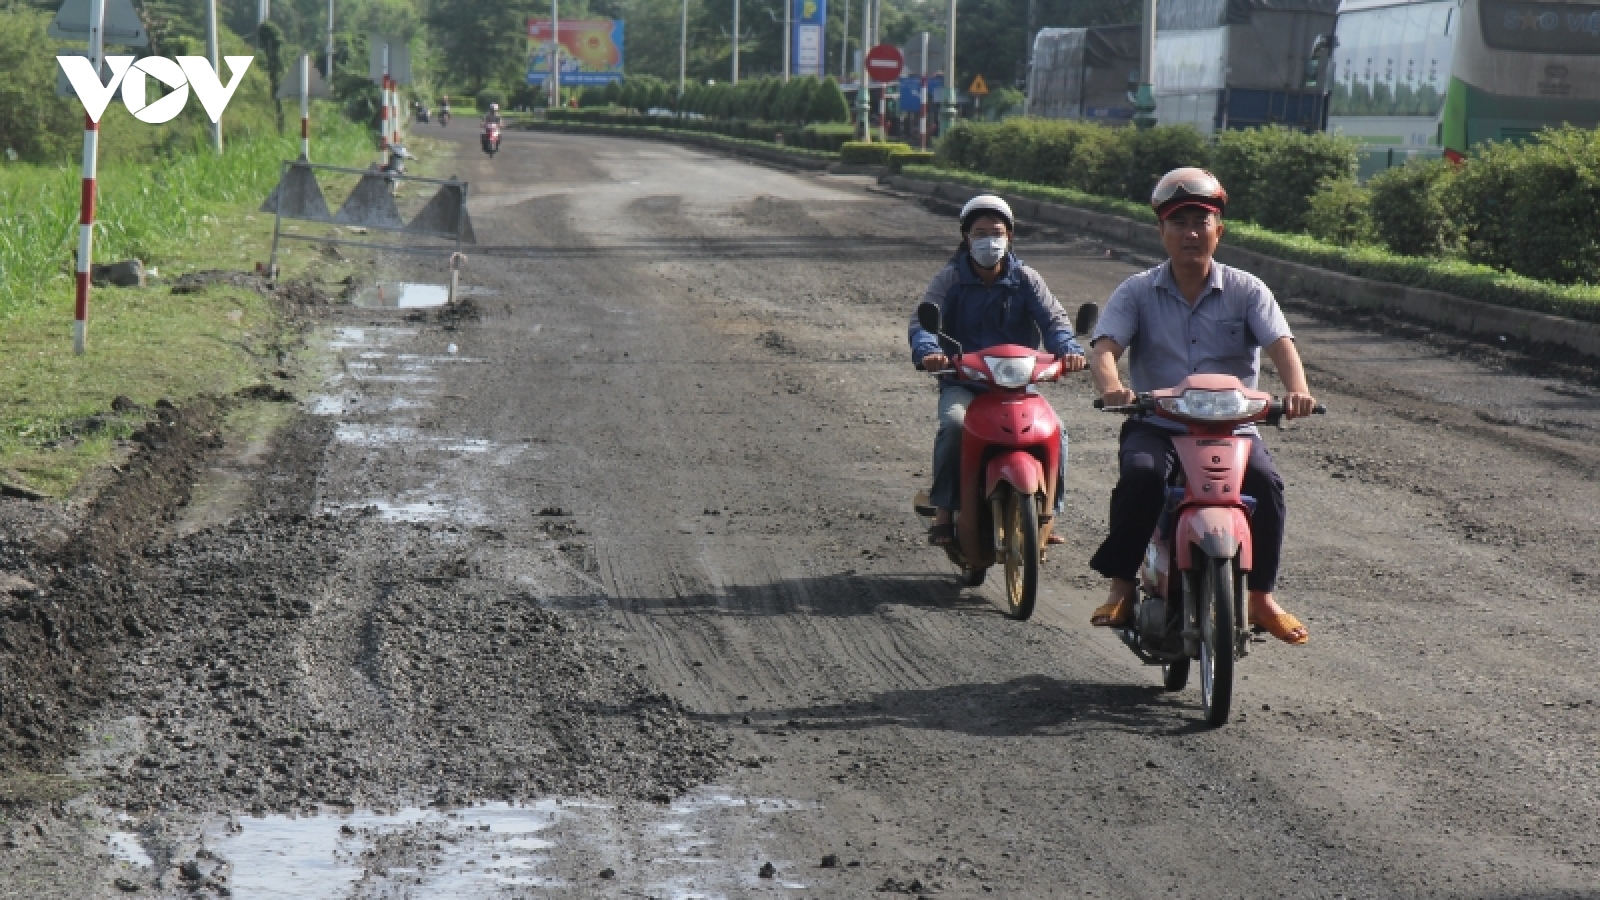 Quốc lộ 1A đoạn qua tỉnh Phú Yên hư hỏng, phương tiện lưu thông khó khăn